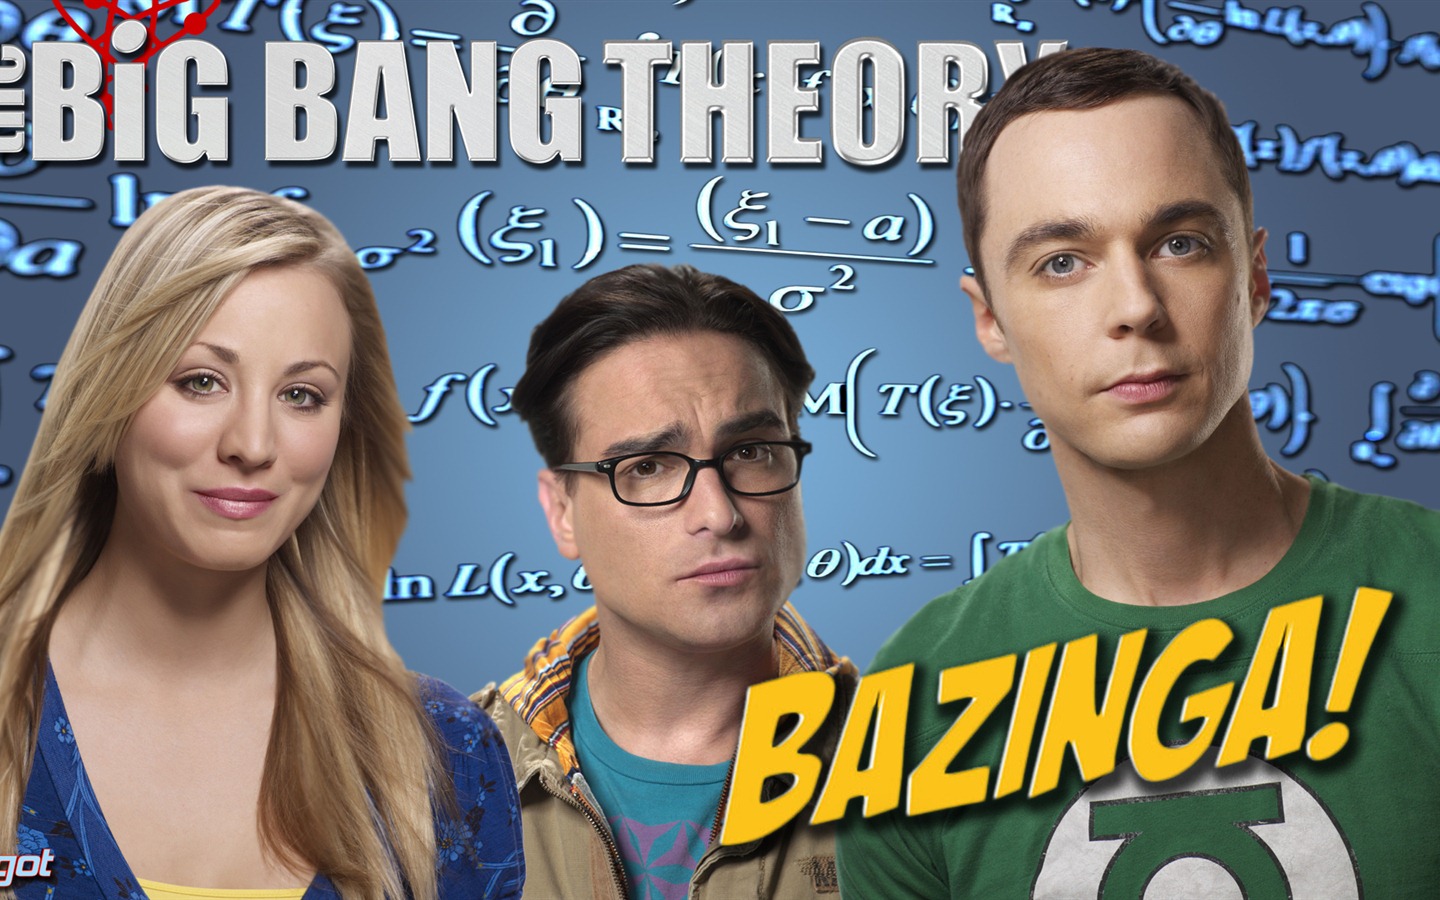 The Big Bang Theory 生活大爆炸 电视剧高清壁纸7 - 1440x900